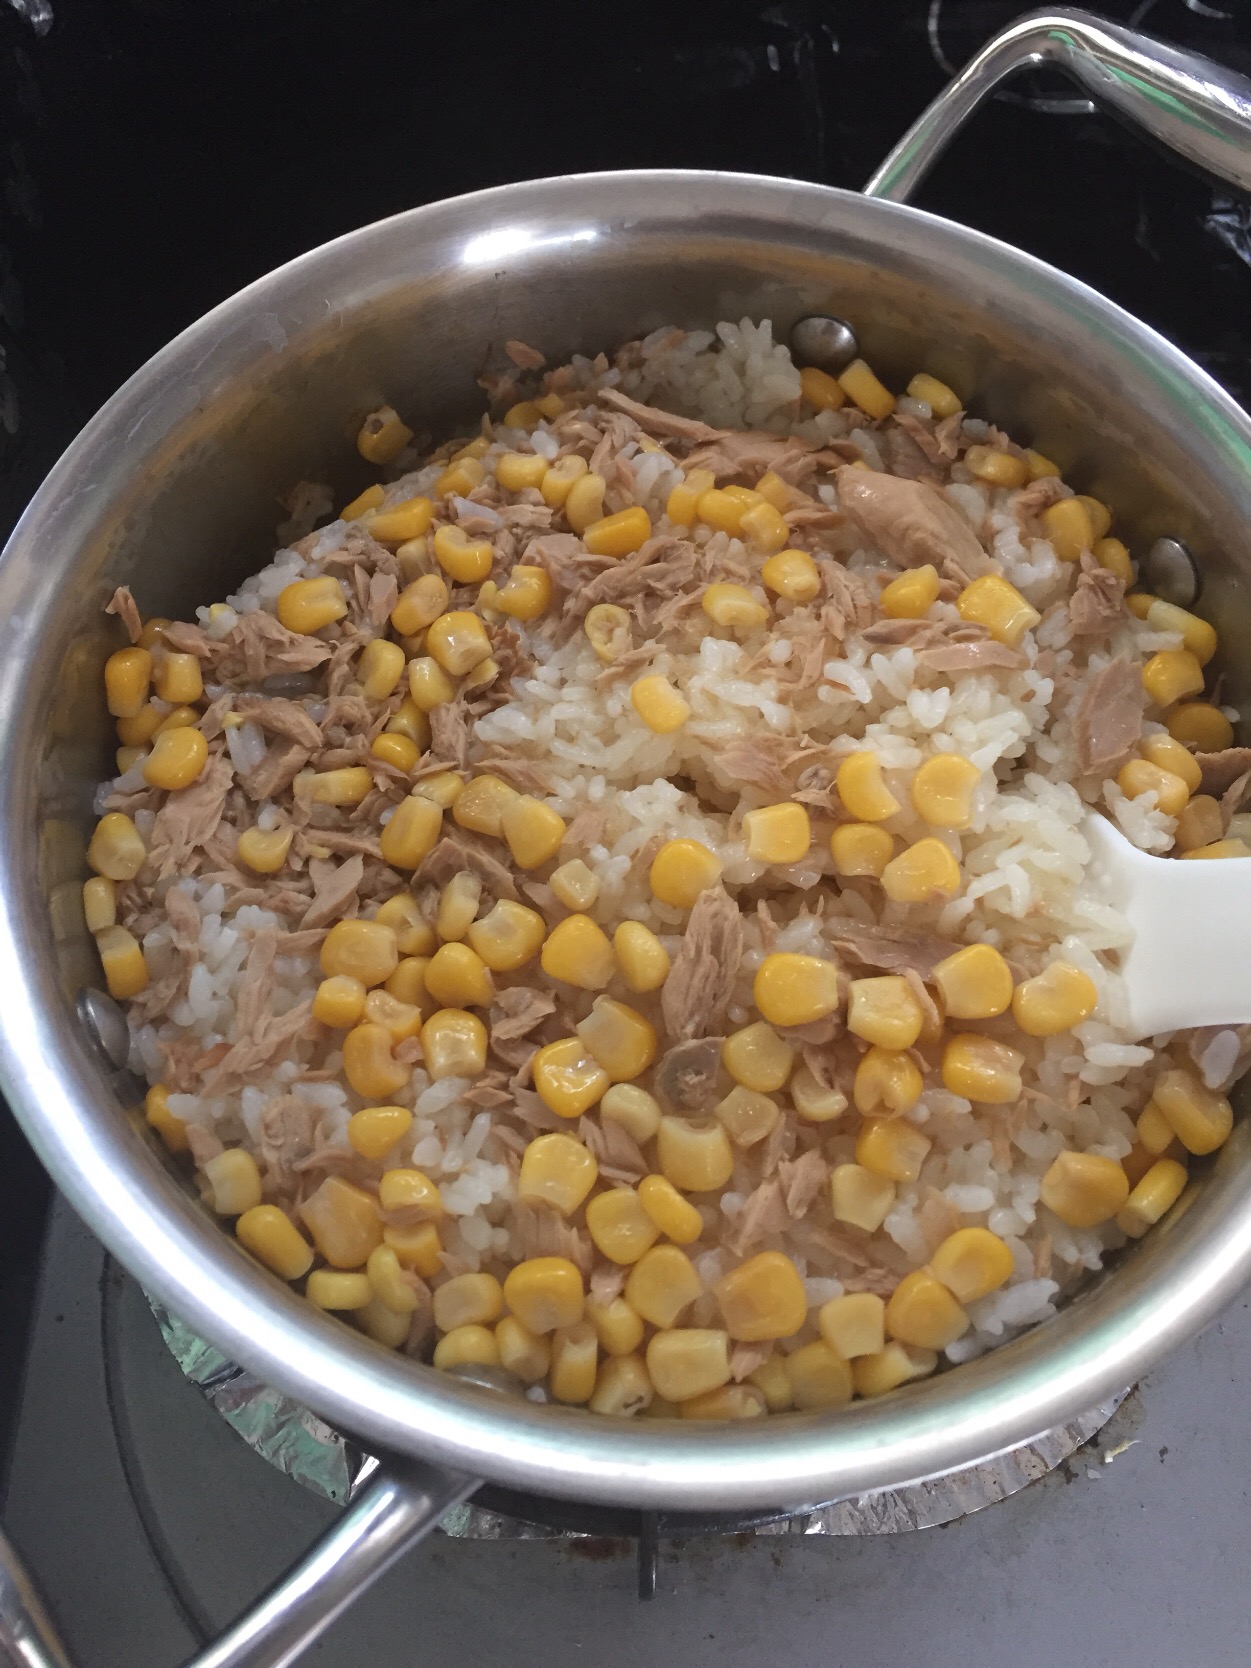 ツナ缶とコーン缶を使って子どもが好きな簡単炊き込みご飯。